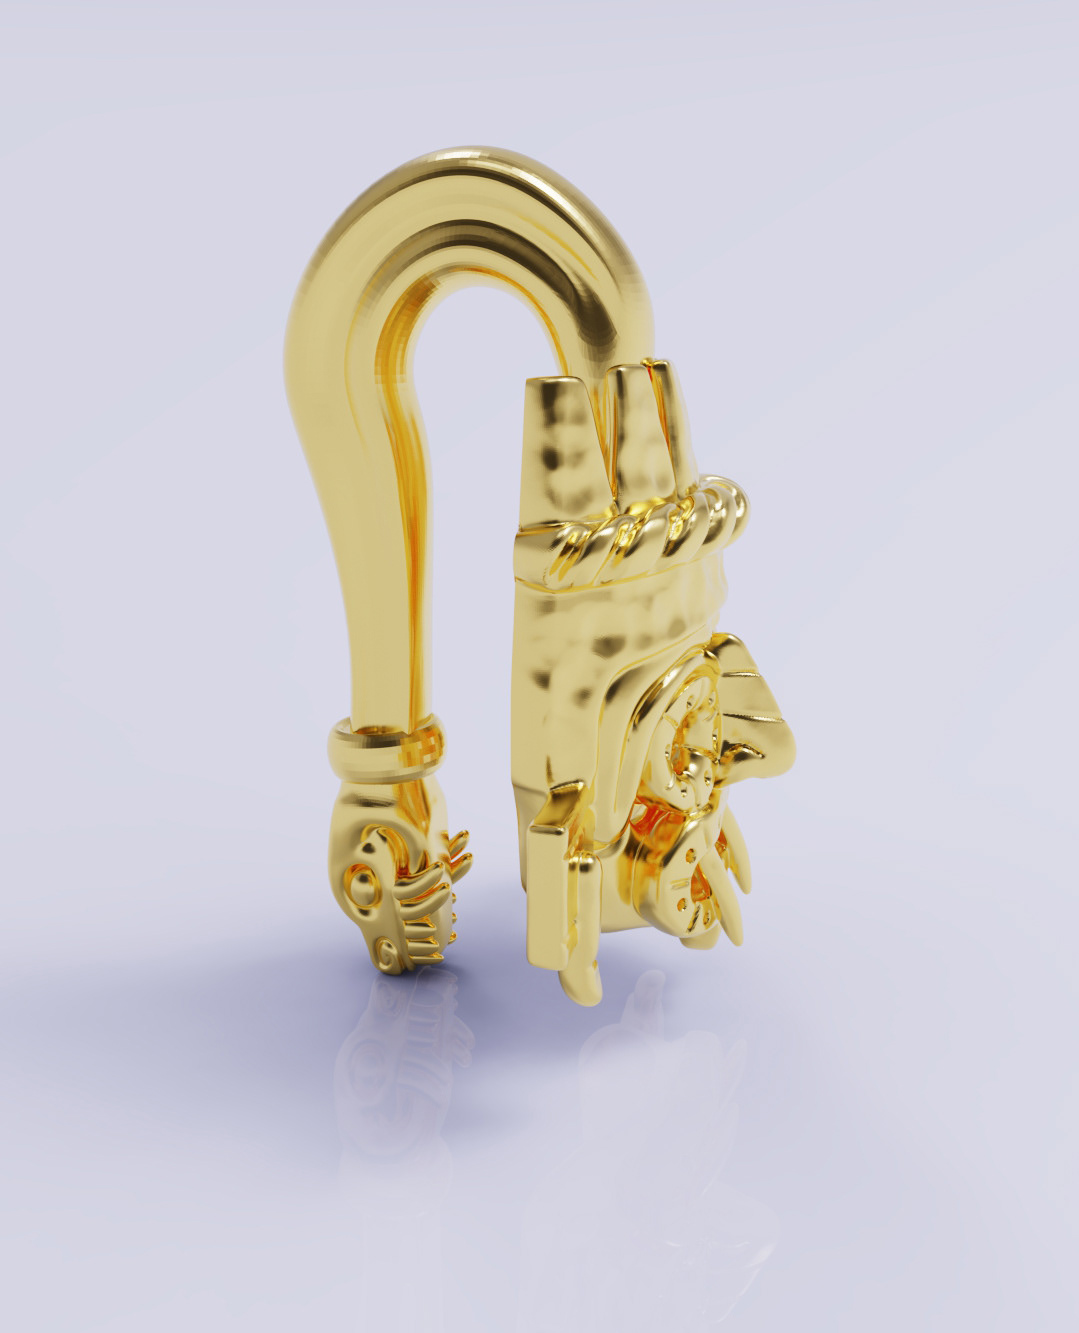 gold jewelry Jewellery 3D 3d modeling Render keyshot Zbrush Rhinoceros